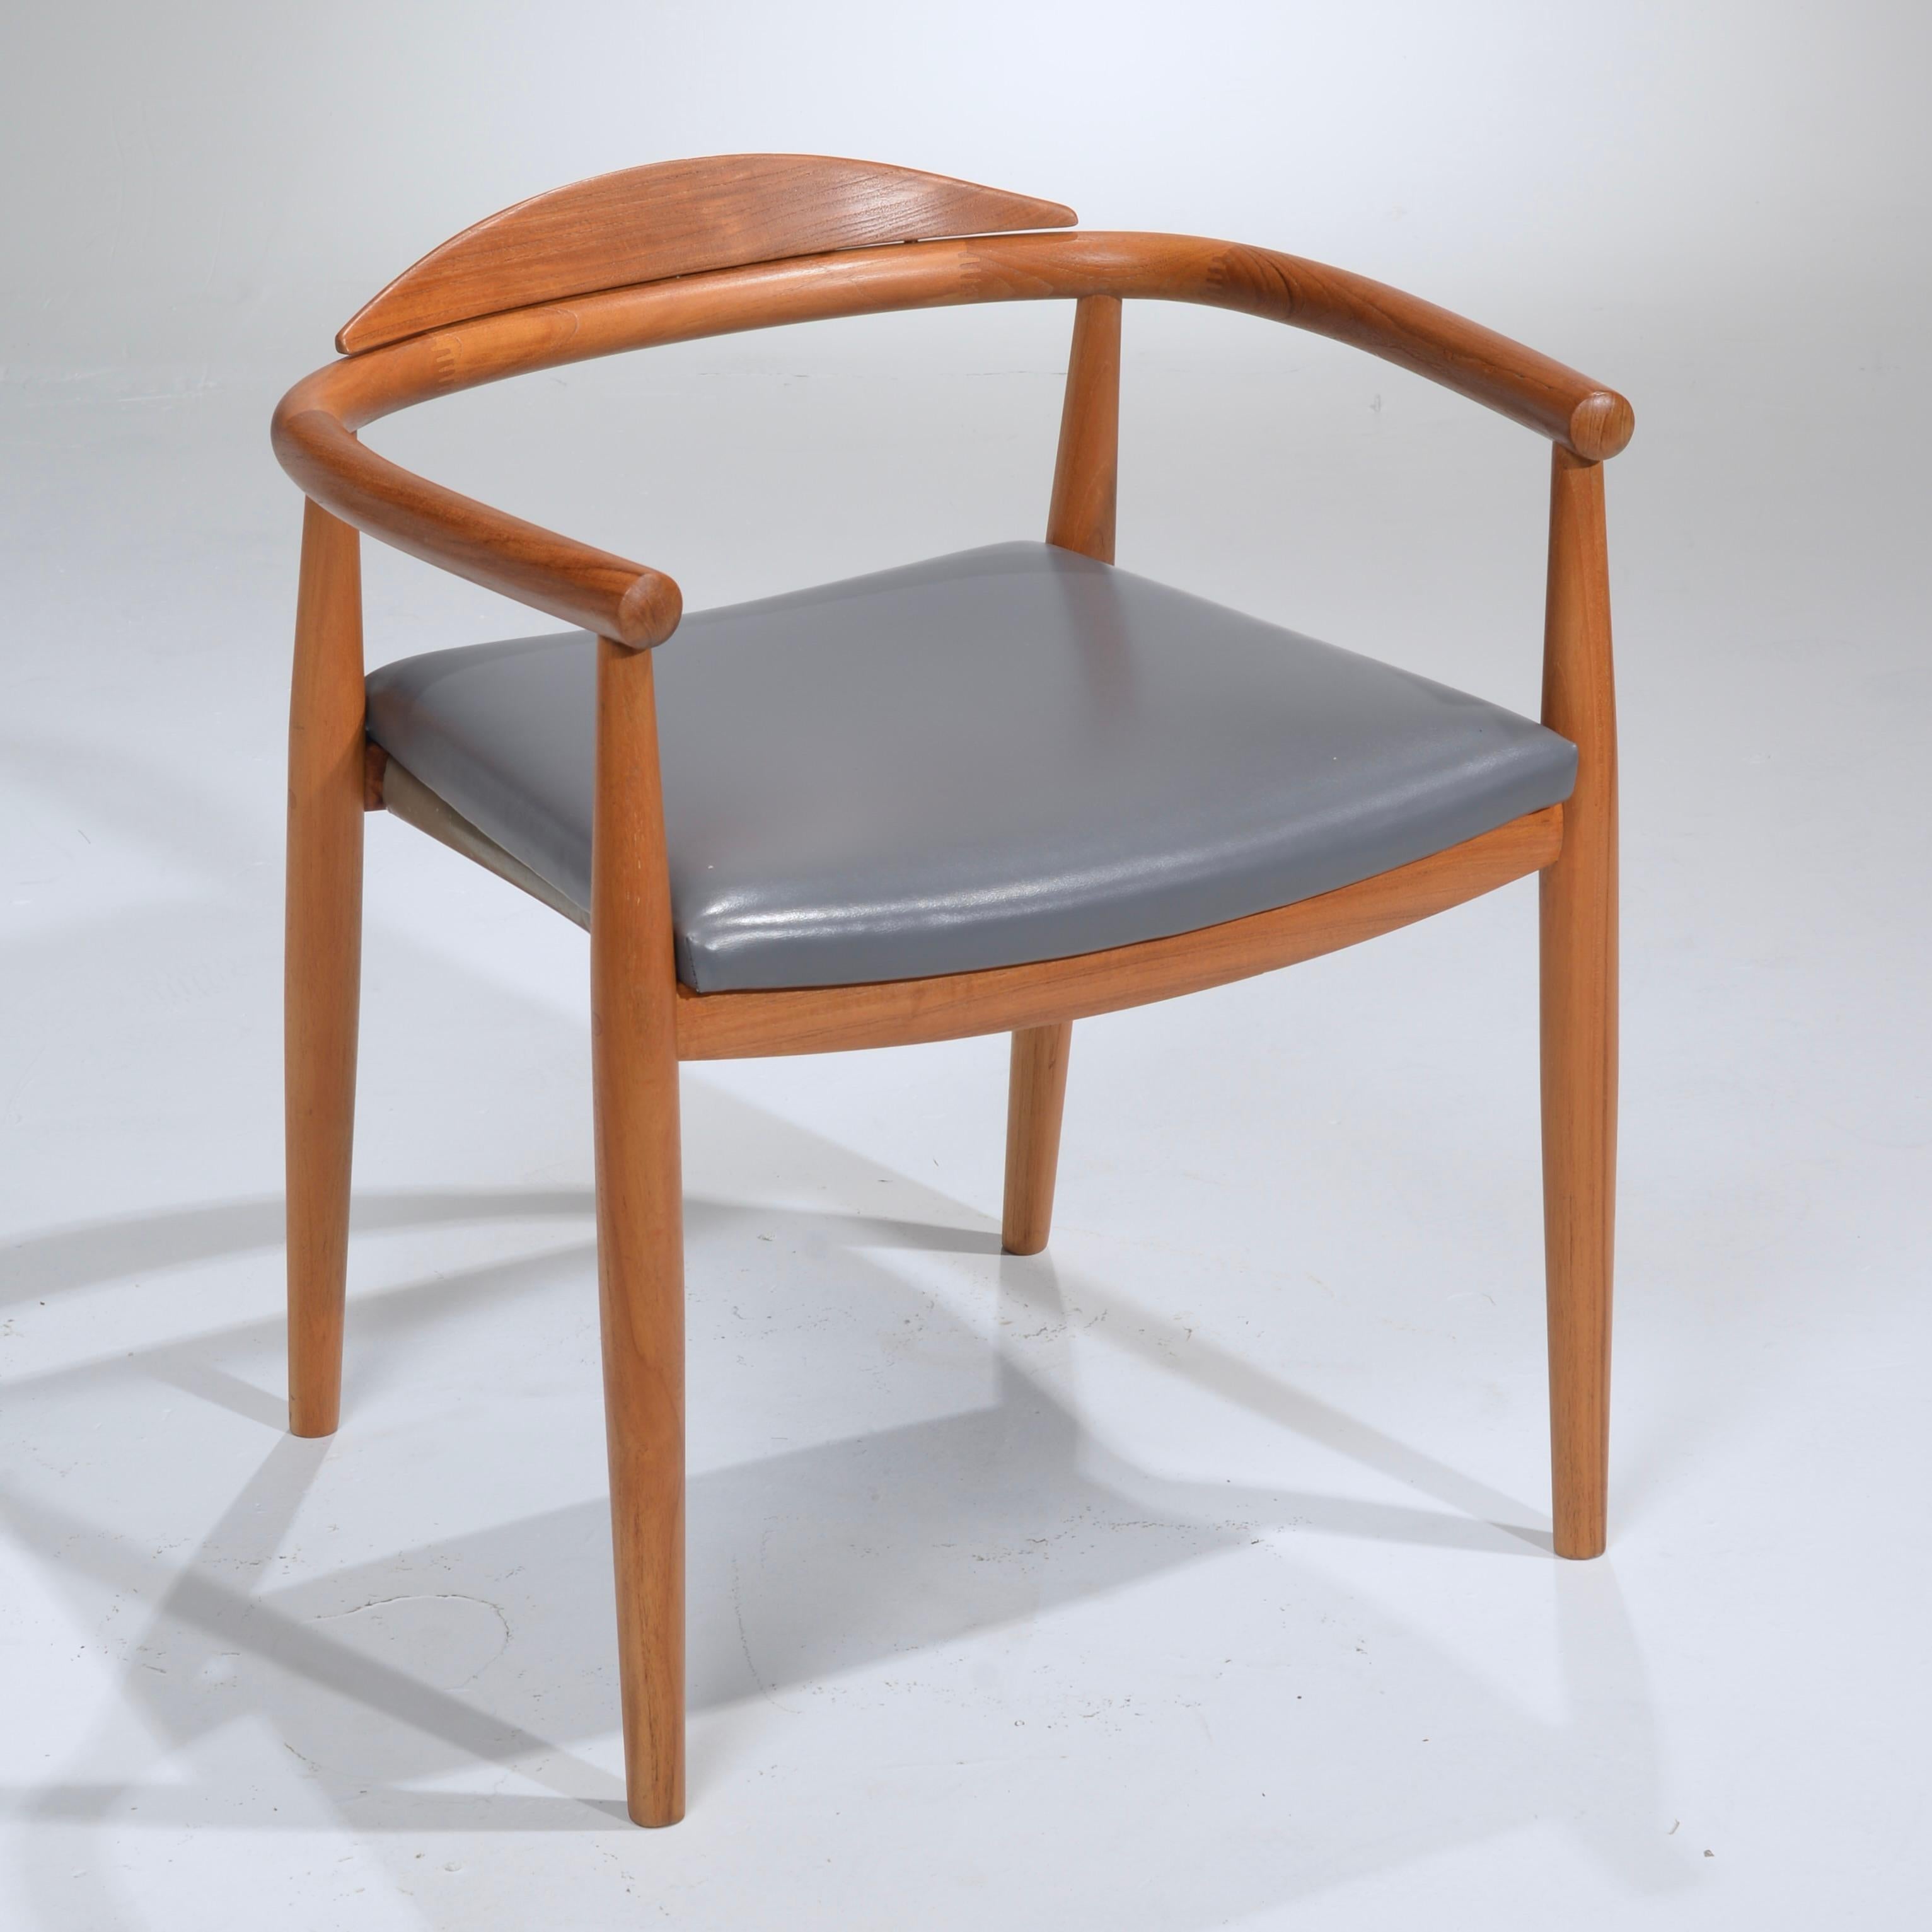 Il s'agit de superbes chaises en teck massif dans le style de Hans Wegner. Fabriquée aux États-Unis.
 